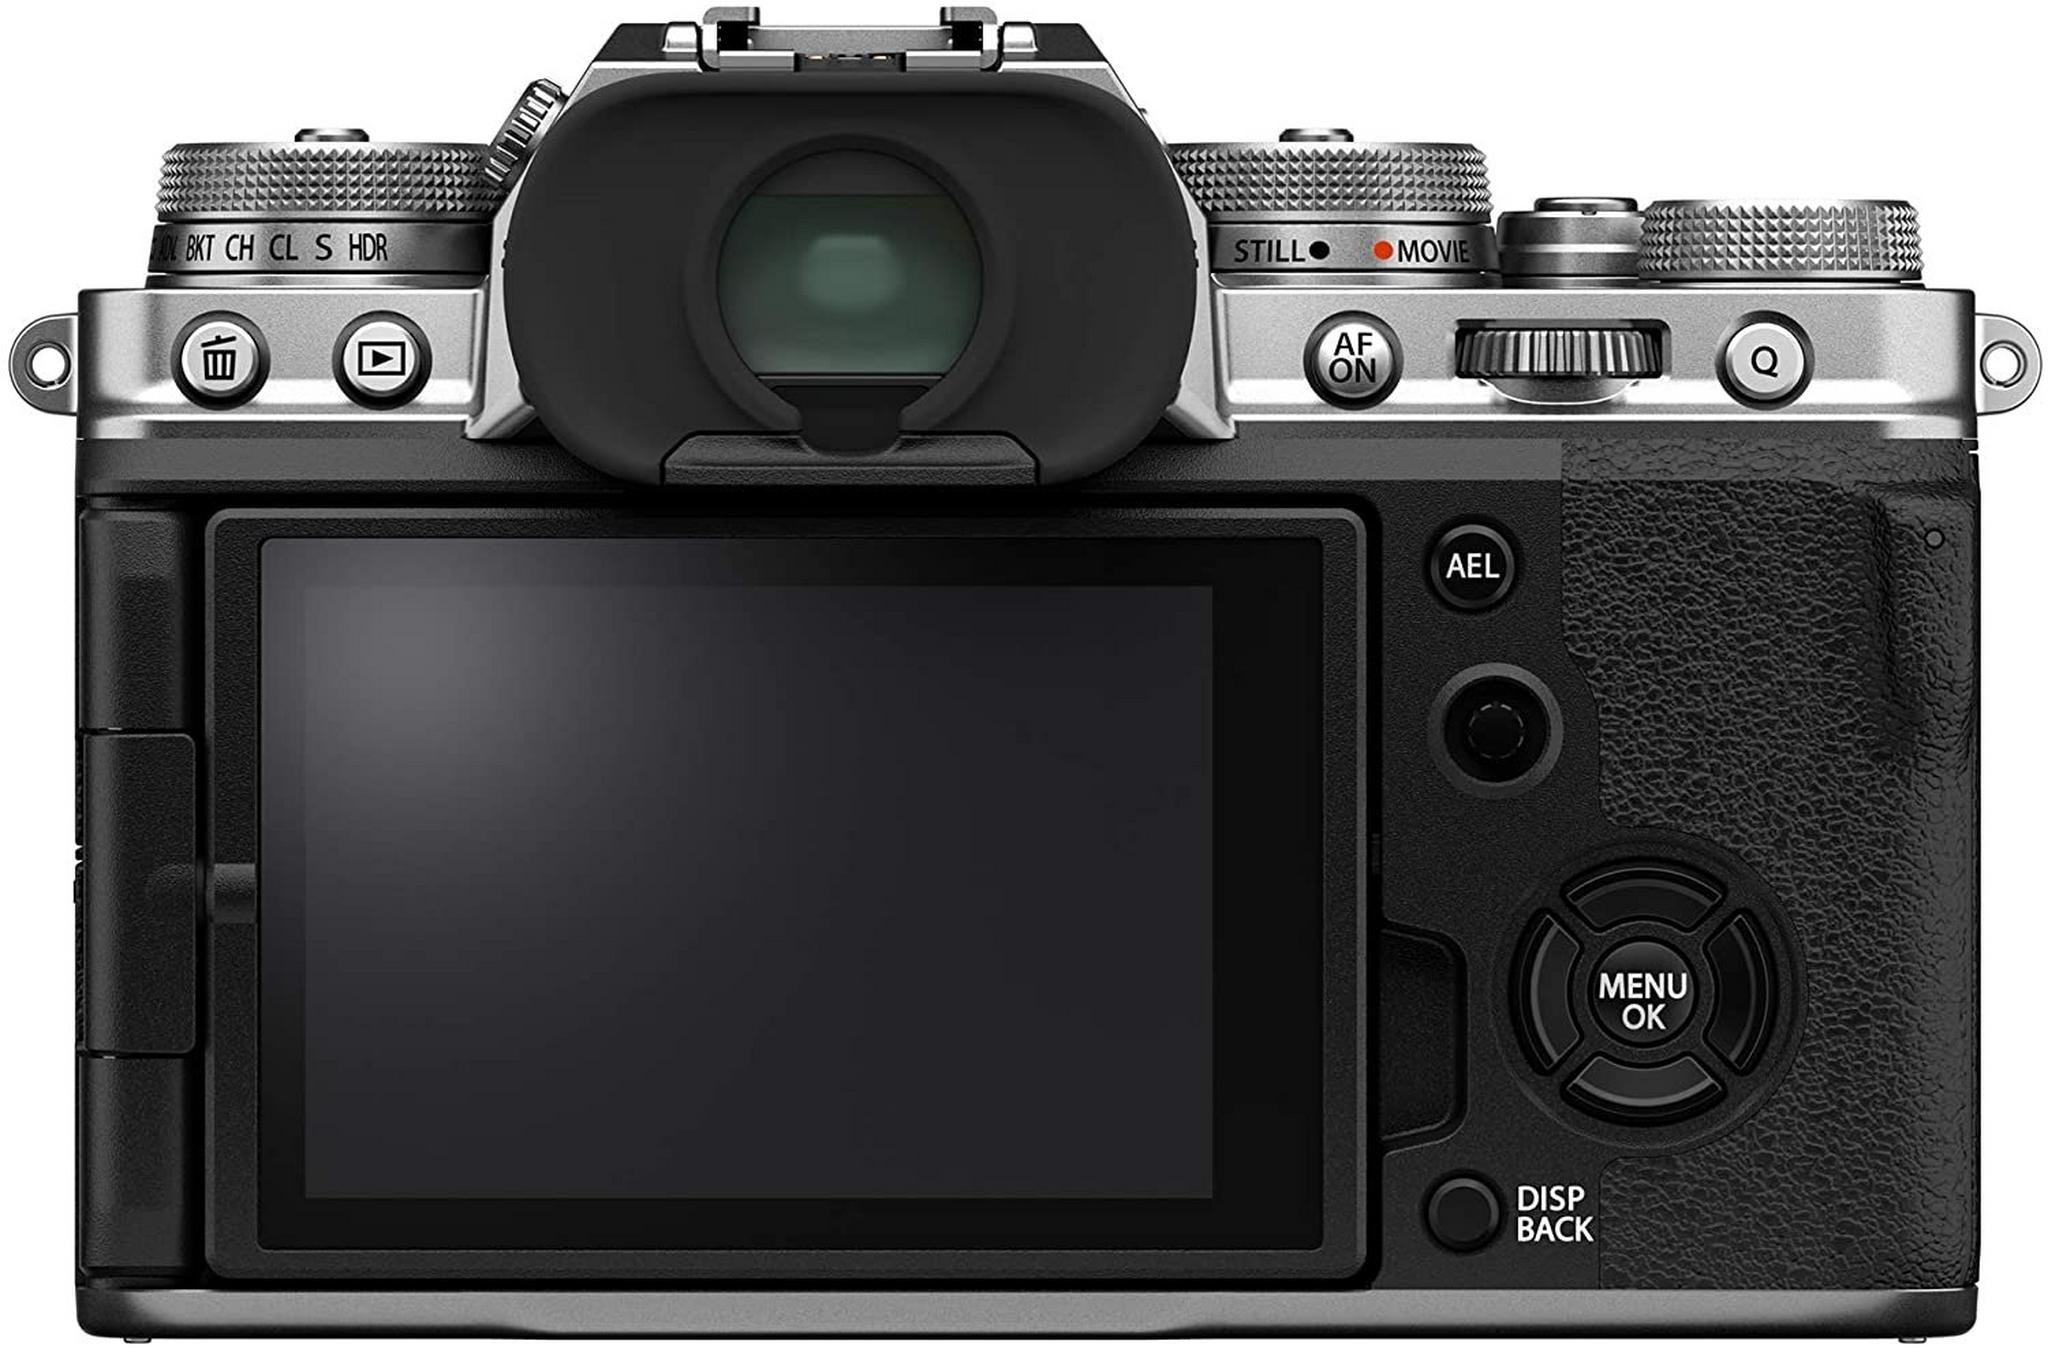 كاميرا فوجي فيلم الرقمية إكس – تي4 بدون مرآه (هيكل فقط) – فضي